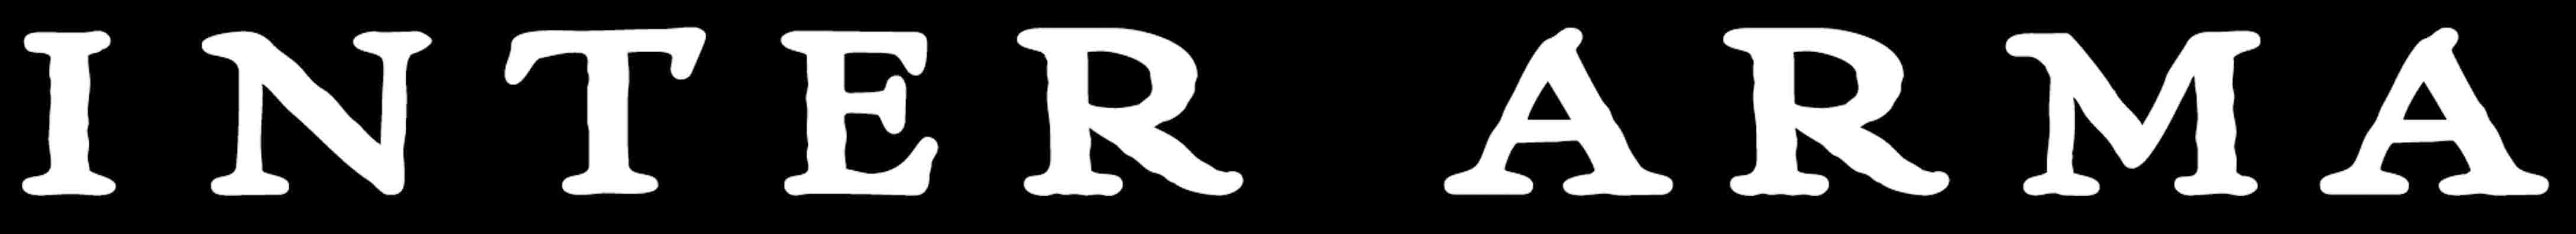 Inter Arma - Logo